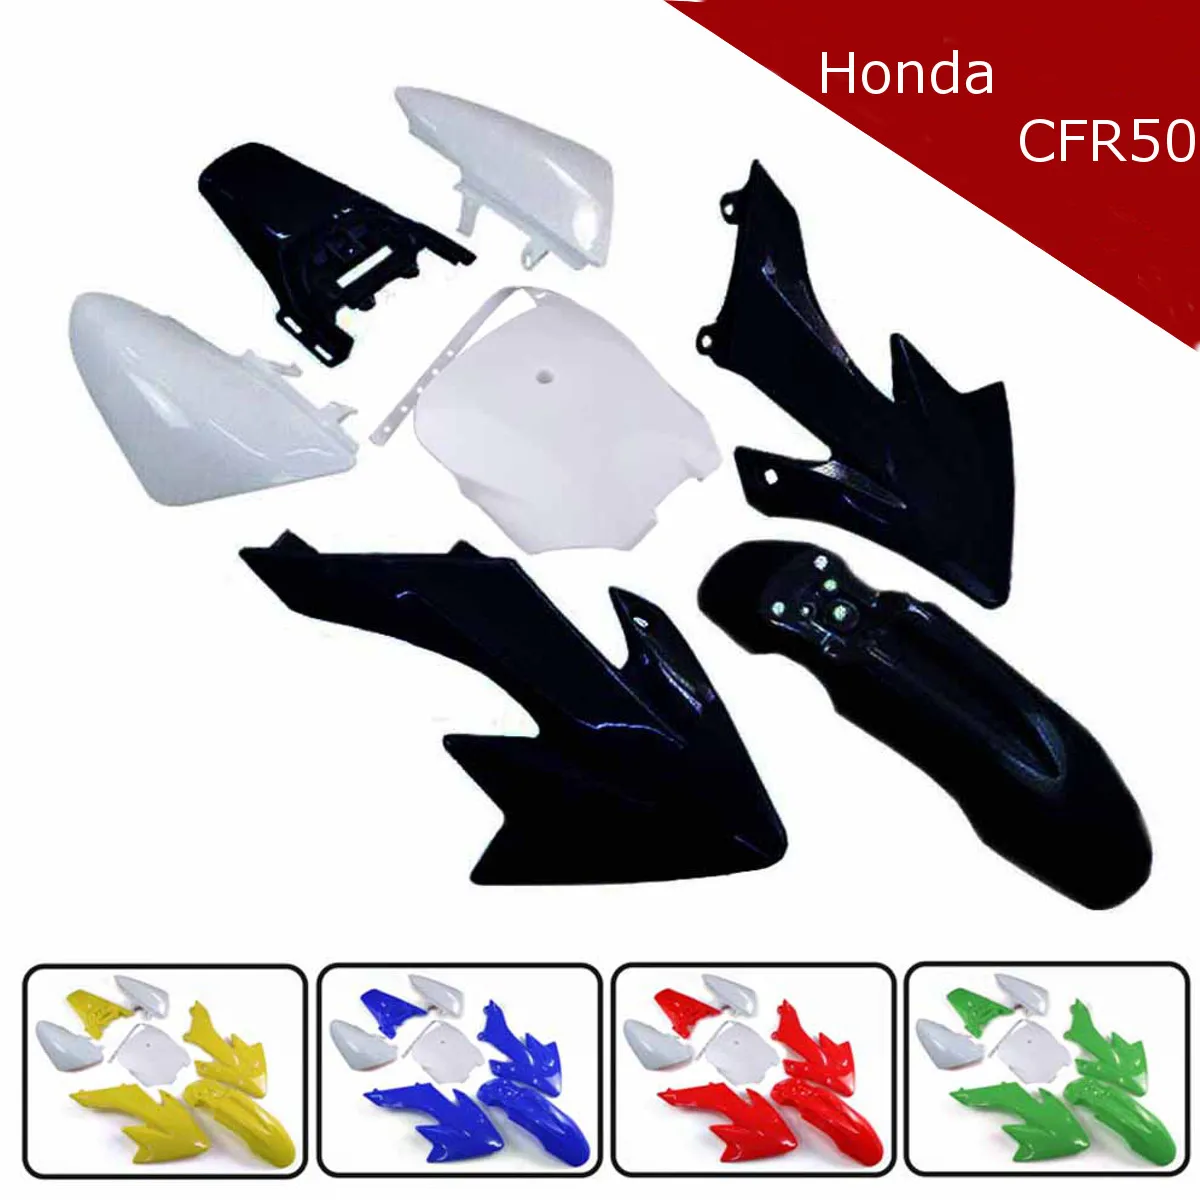 Plastic Fairing Fender Kit Cover Set for Honda XR50 CRF50 70-125CC Pit Dirt Bike 